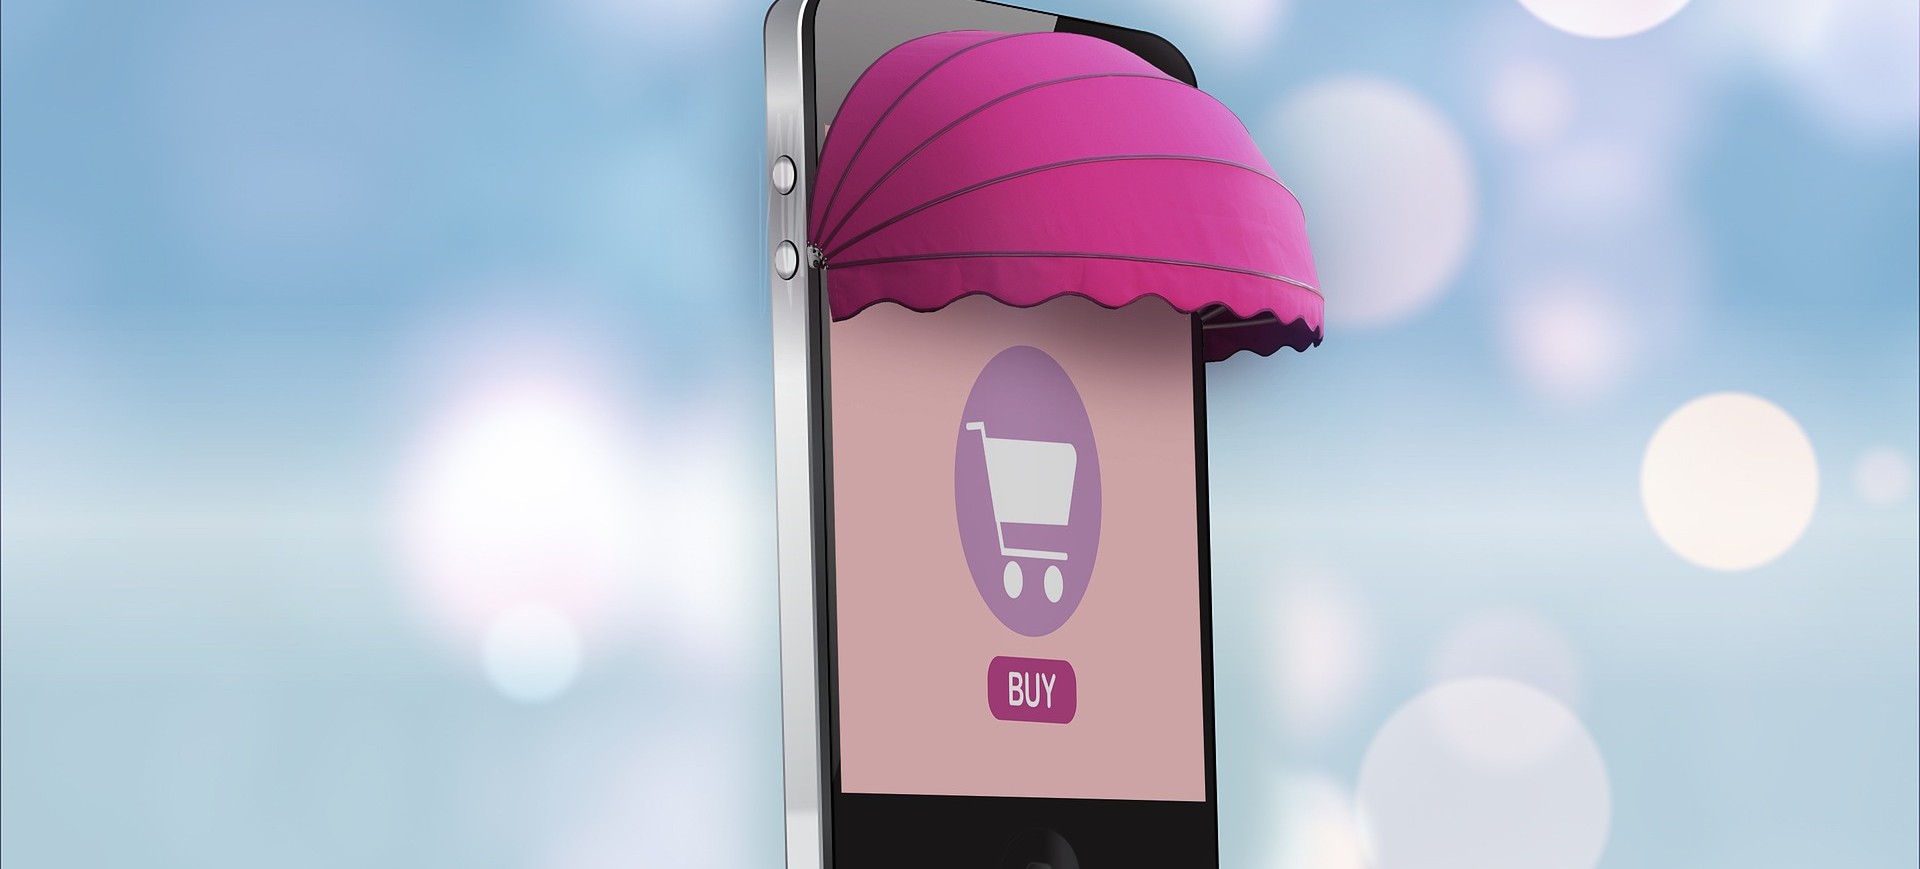 Ilustração de um smartphone com um toldo e um símbolo de um carrinho de compras na tela, para ilustrar o e-commerce ou comércio eletrônico